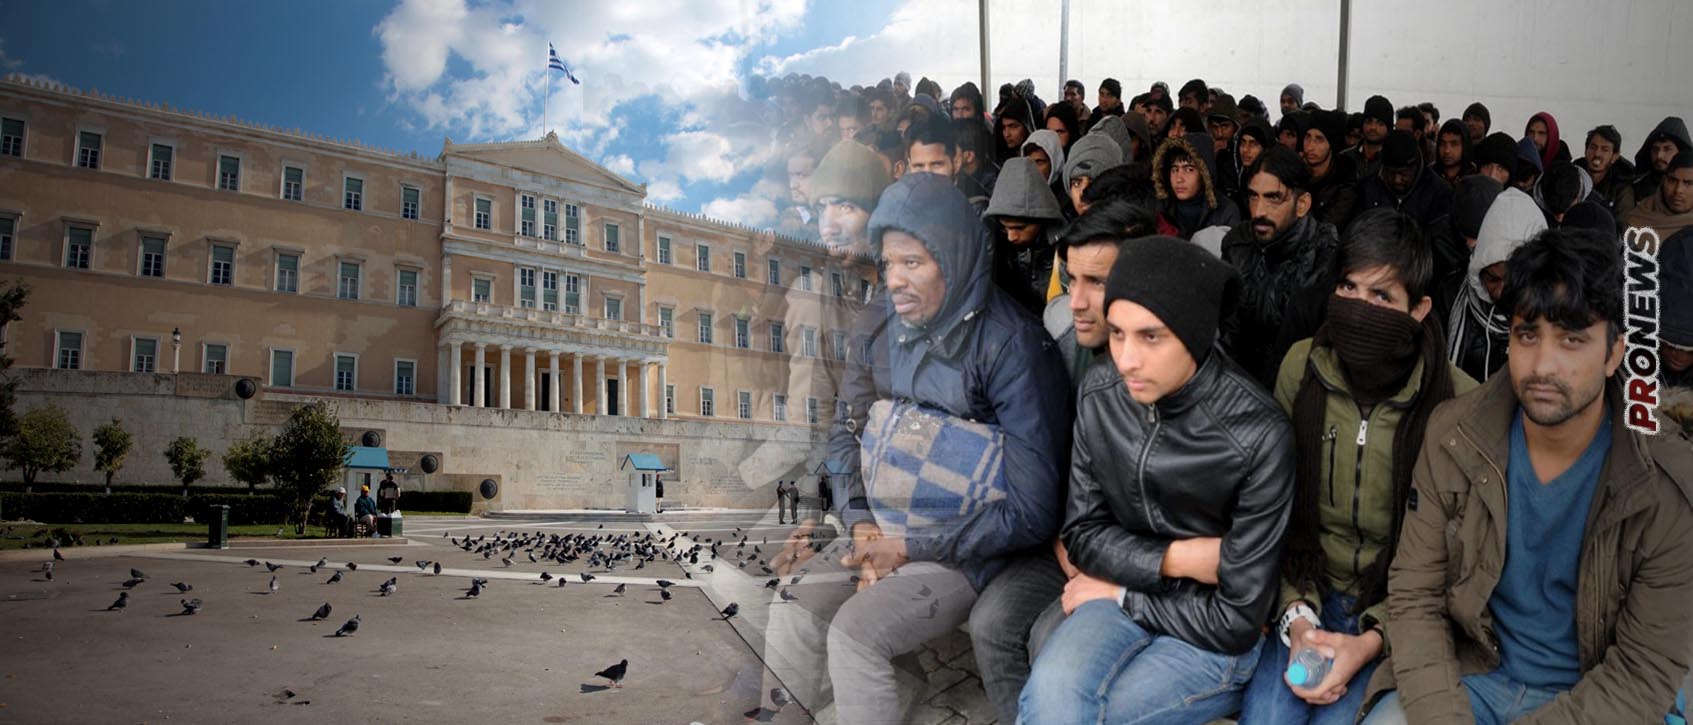 «Ελλάς-Ελλήνων», οριστικά τέλος: Ψηφίστηκε η νομιμοποίηση των παράνομων μεταναστών – «Αβρόχοις ποσί» για ΝΔ η διαφωνία Α.Σαμαρά